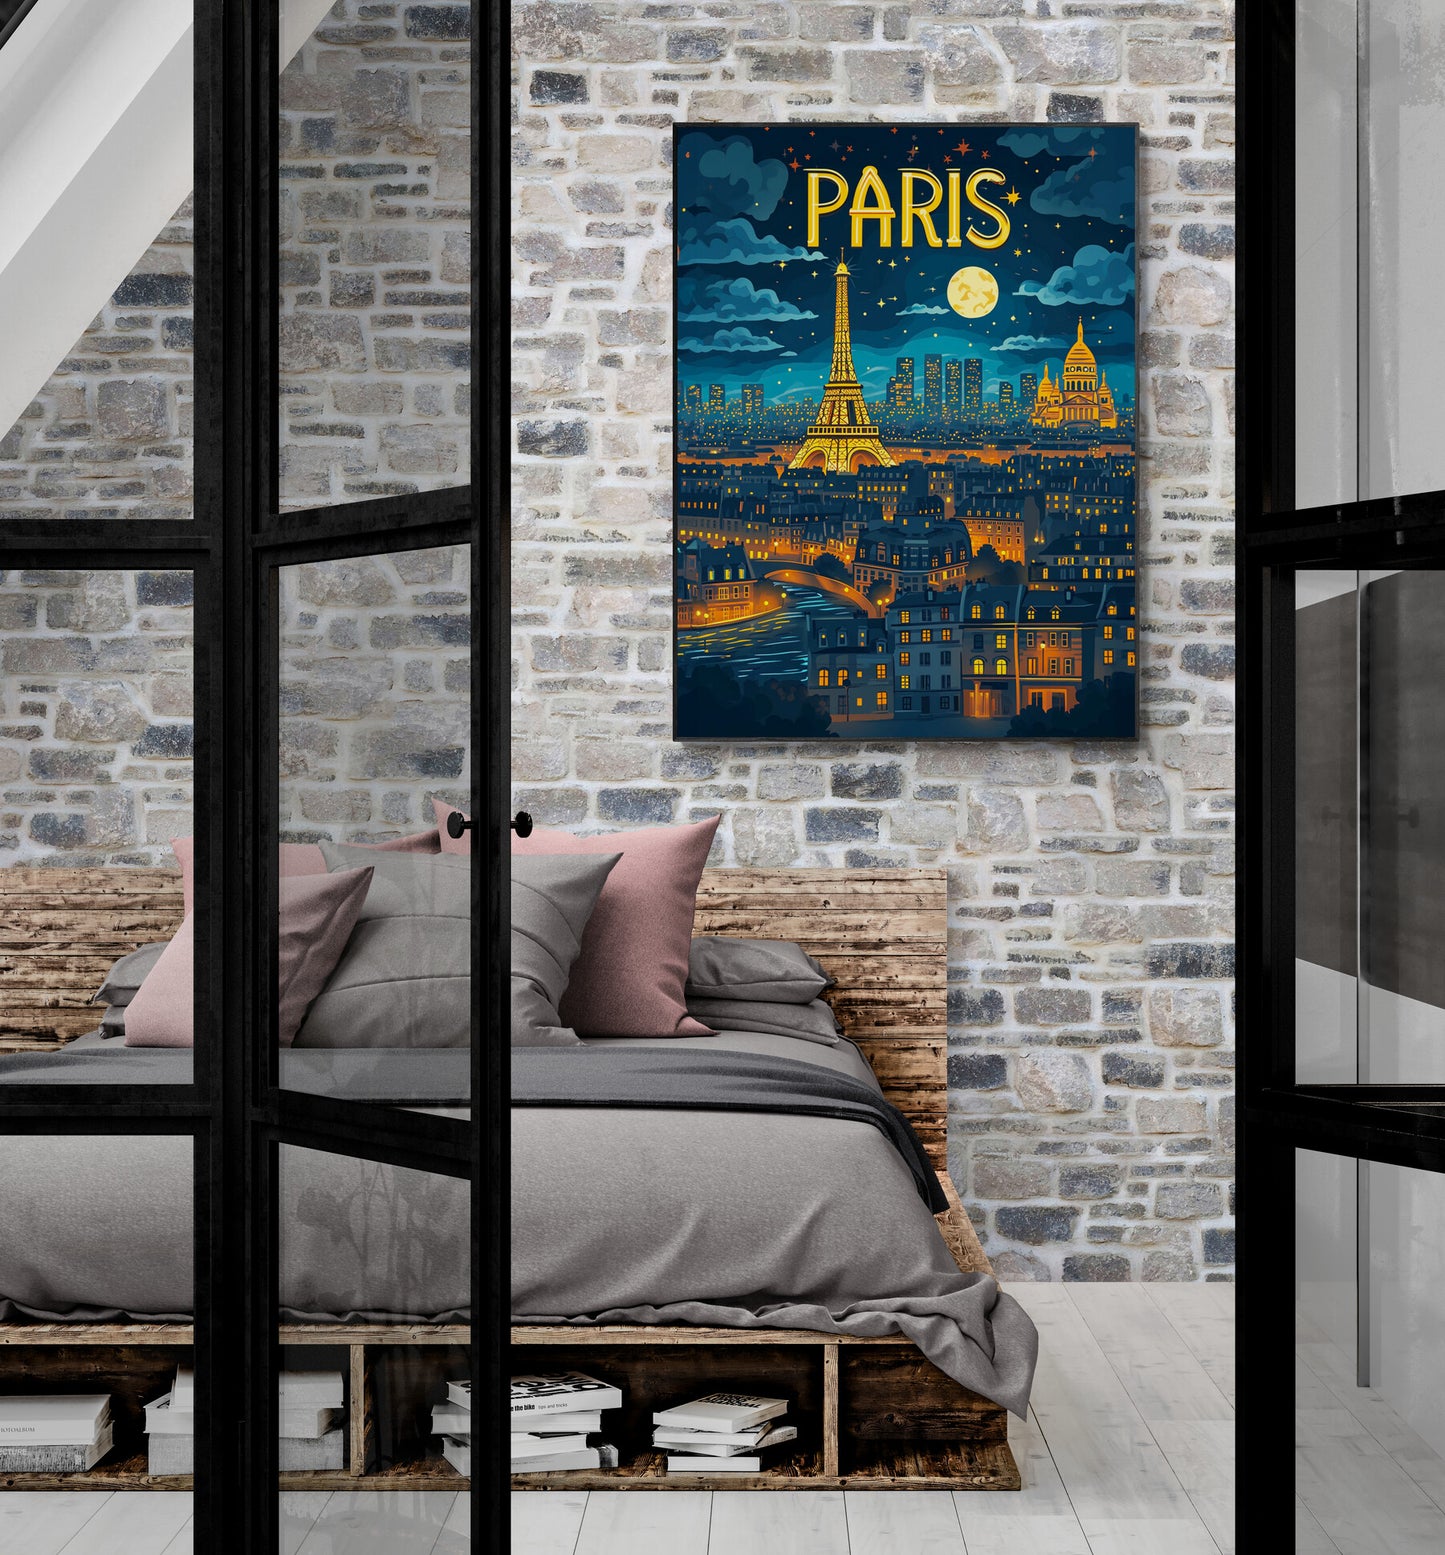 Un tableau illustrant Paris la nuit est posé au-dessus d'un lit rustique dans une chambre aux murs de pierres apparentes, créant un contraste entre l'ancien et le romantisme urbain.